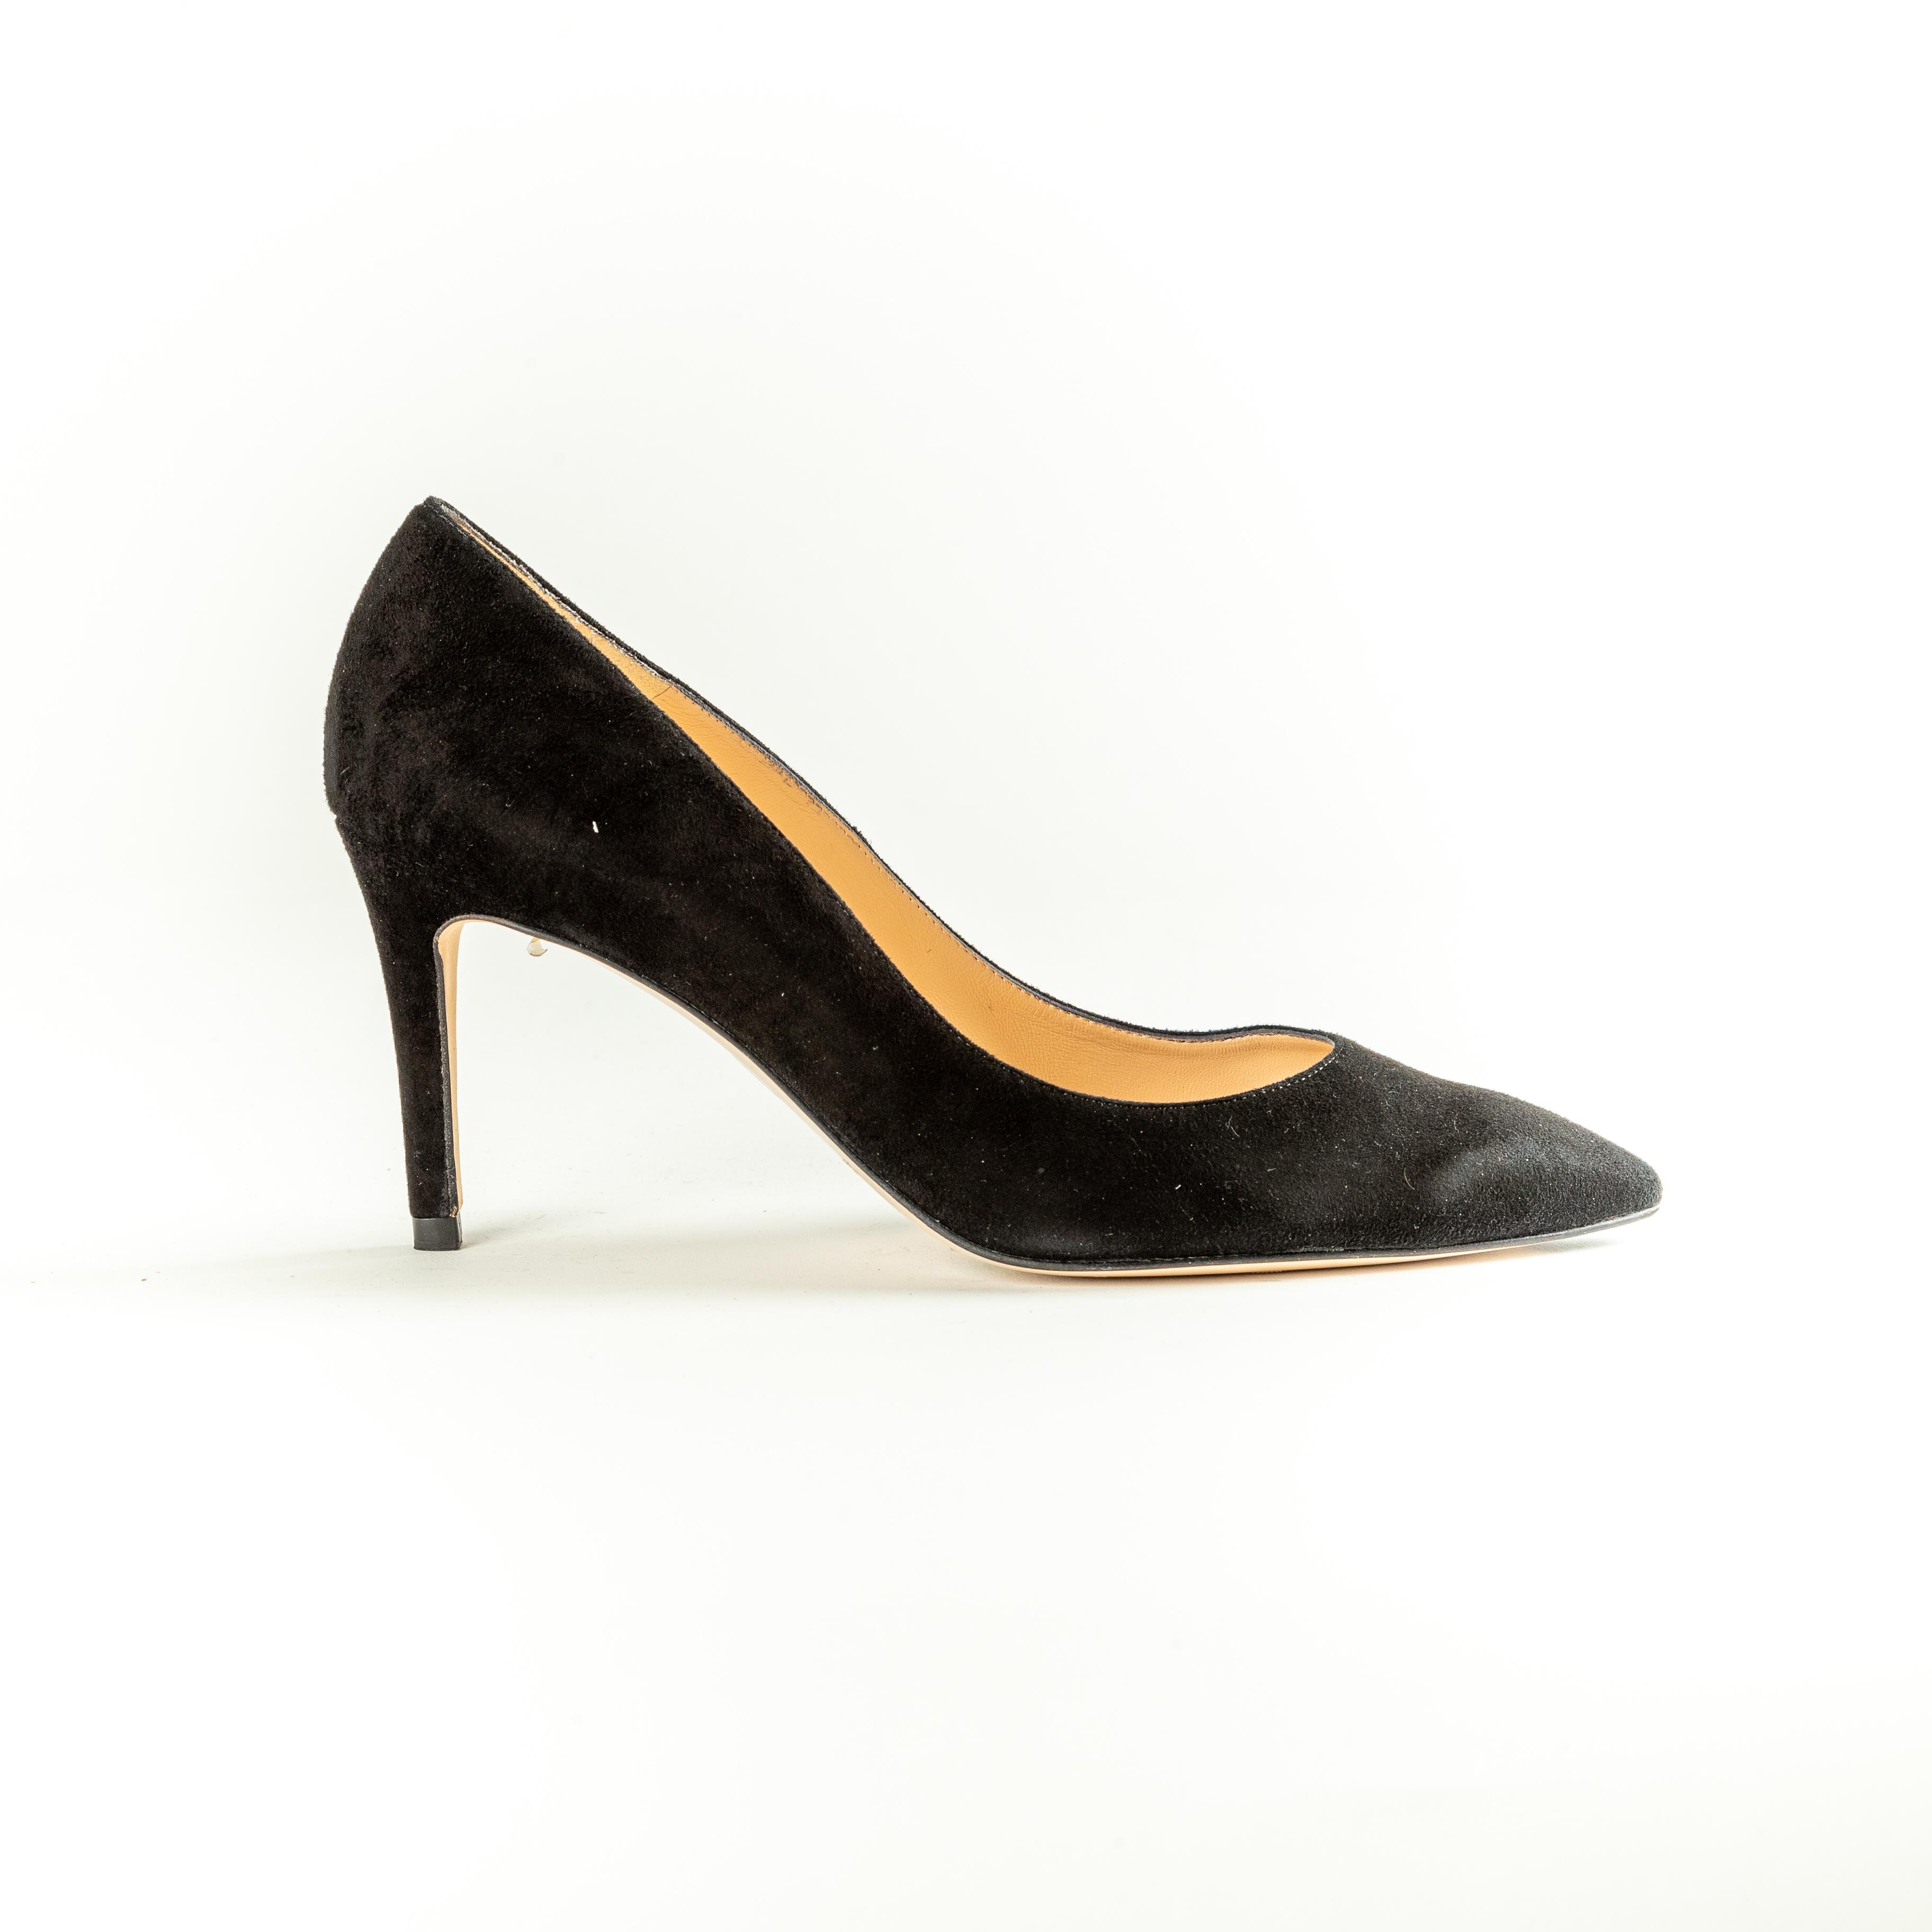 L.K. Bennett Floret, Suede Court Shoes. Size 42 / UK 9.